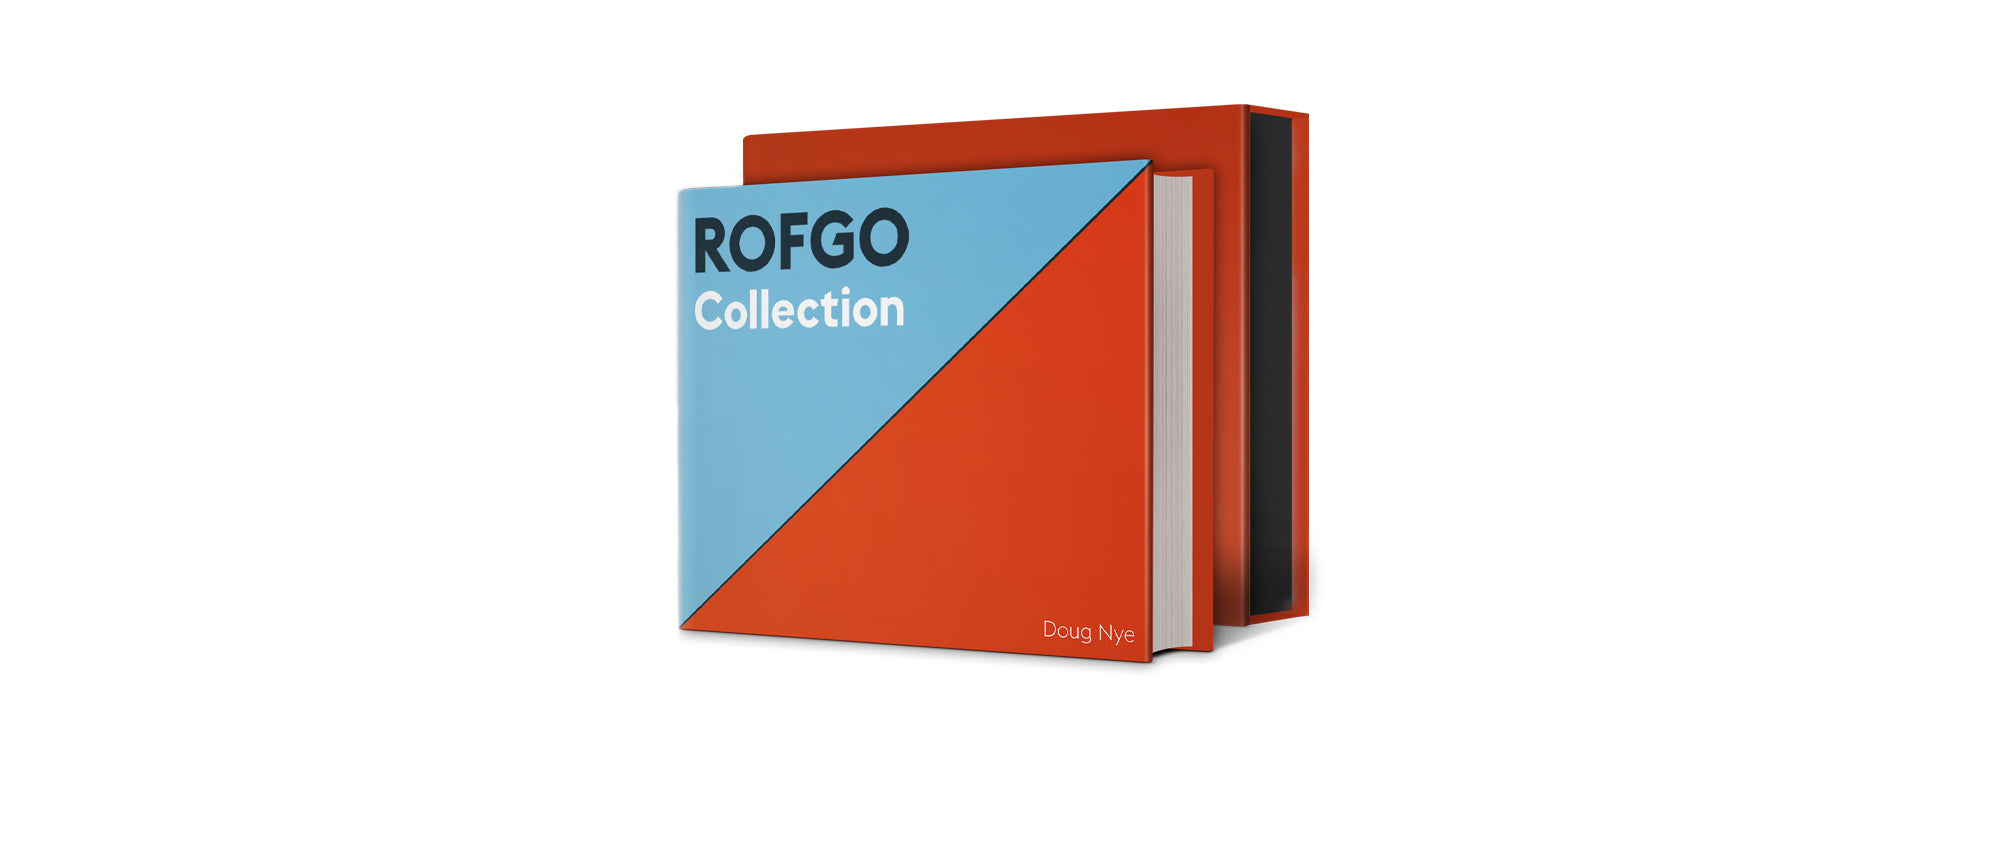 ROFGO Collection - Collector's Edition